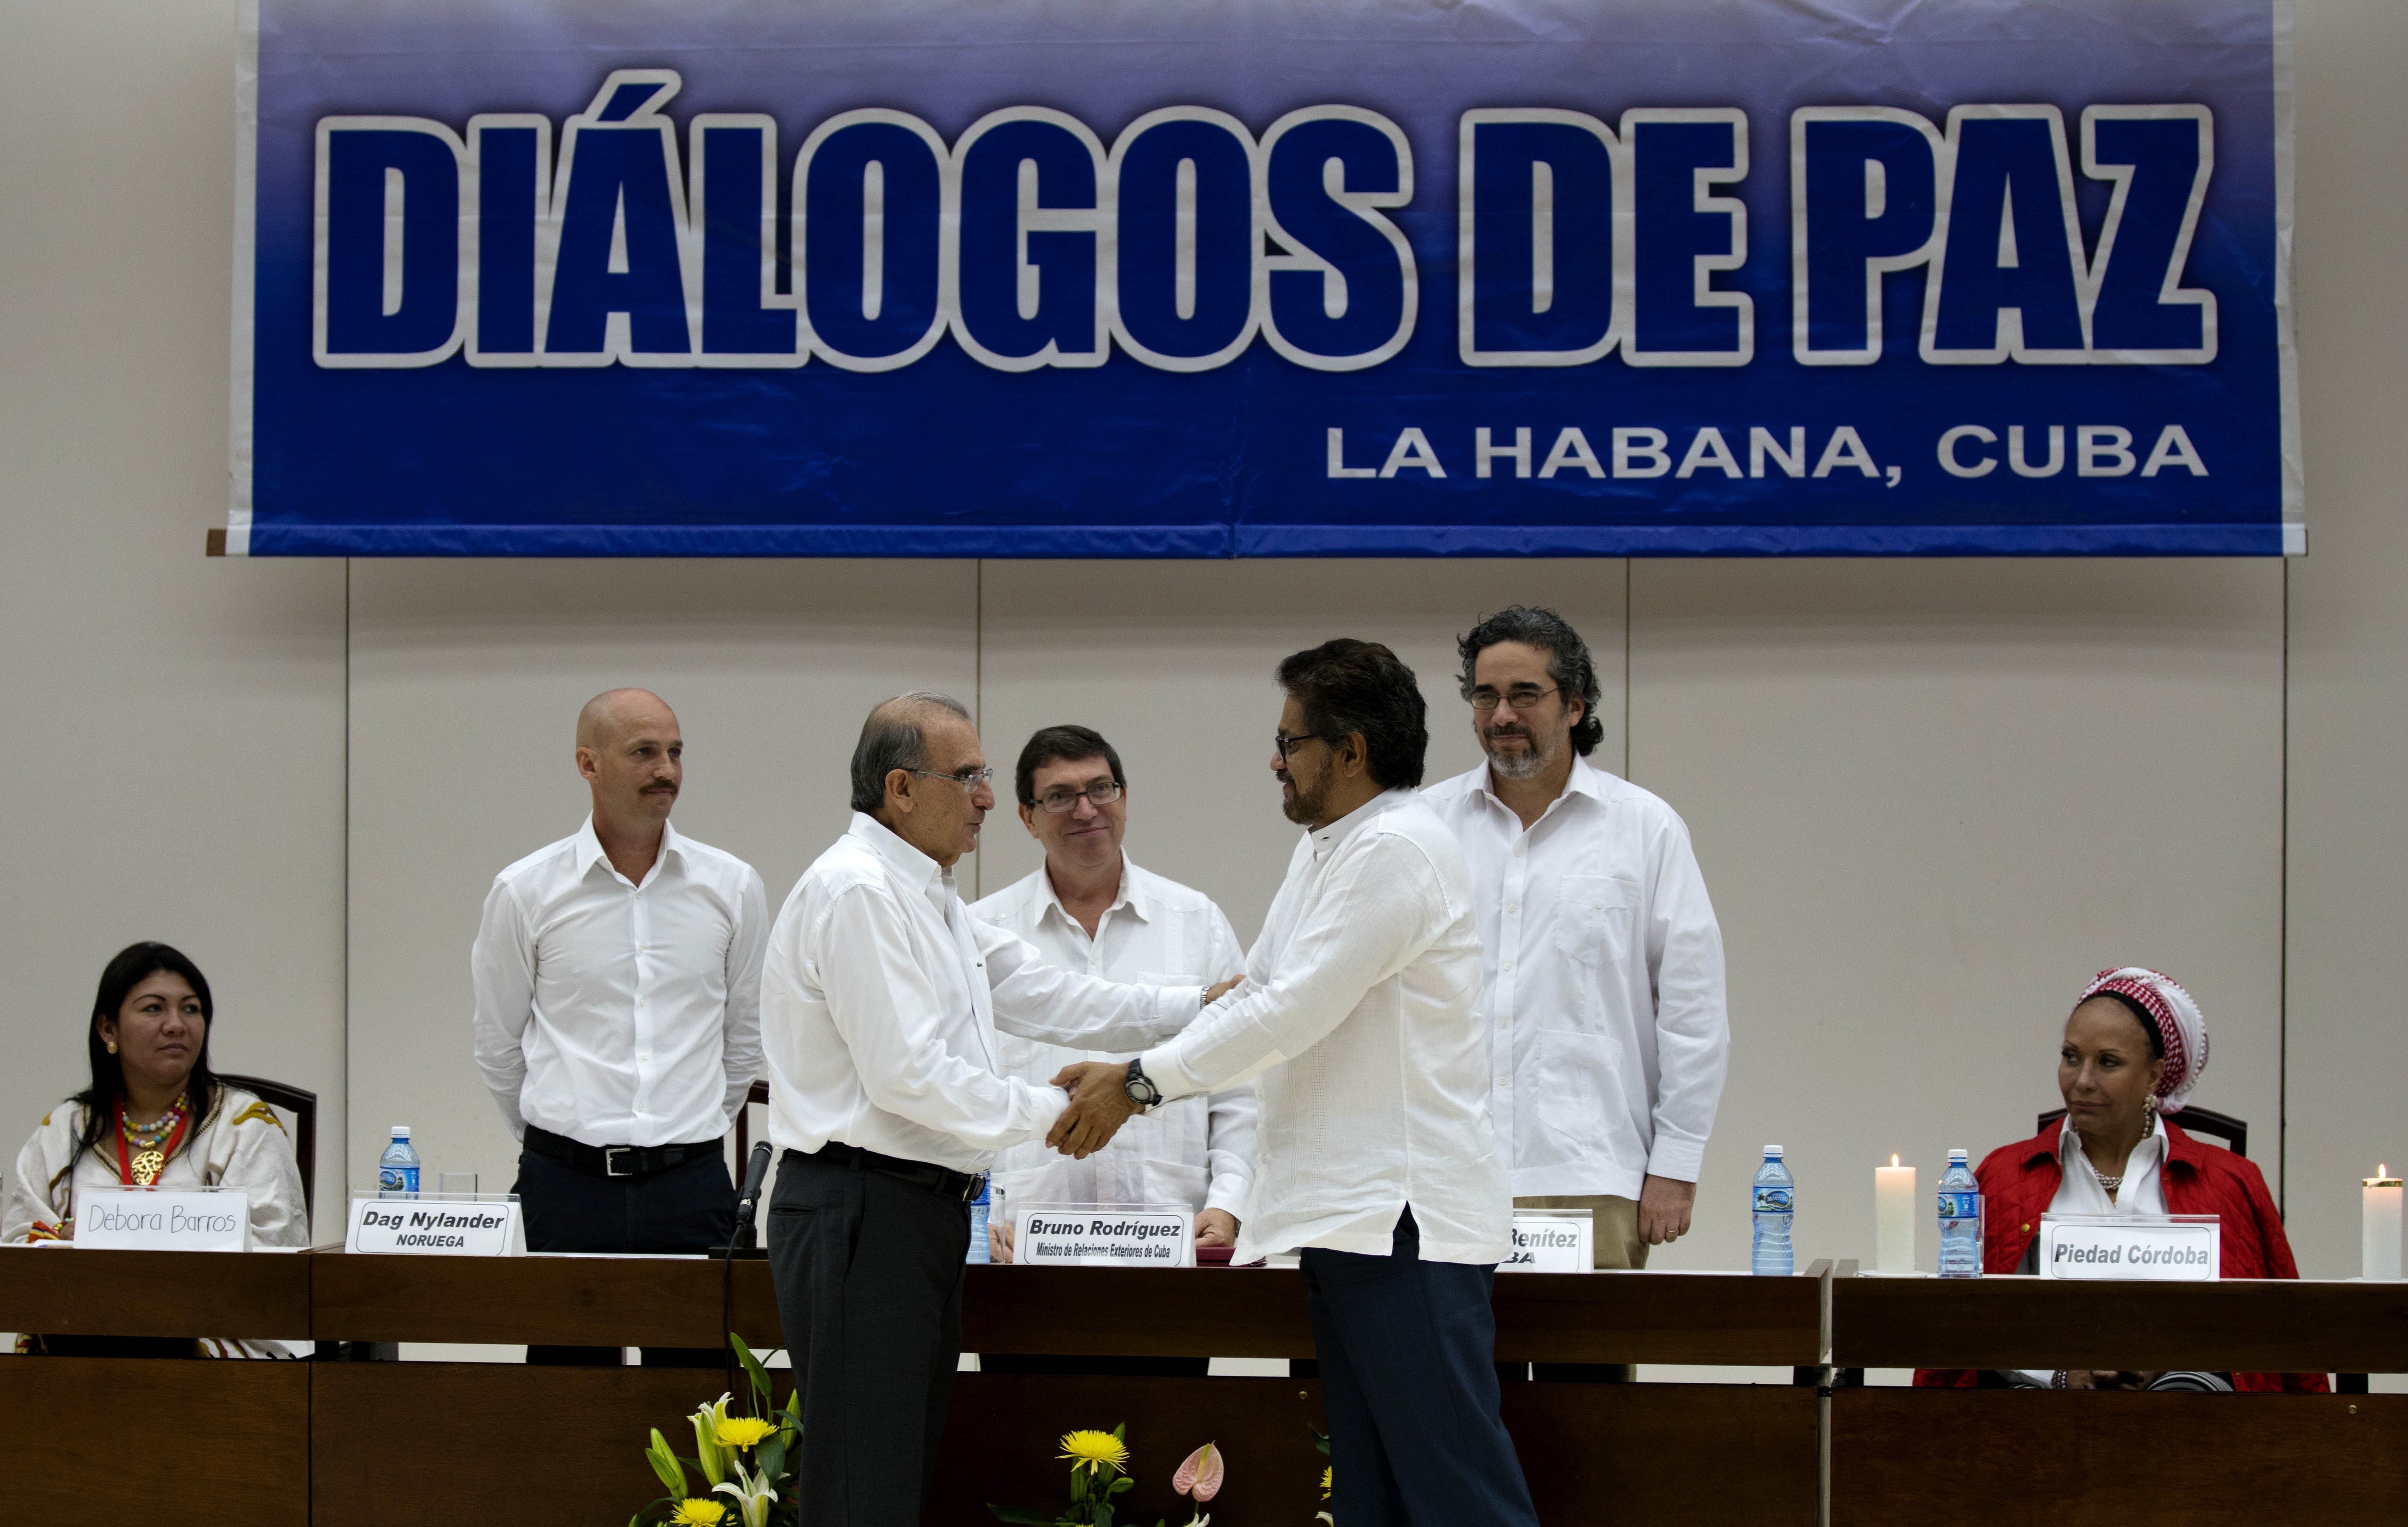 O chefe da equipe de negociação do governo colombiano Humberto de la Calle, na frente à esquerda, cumprimenta Ivan Marquez, negociador-chefe das Farc nesta terça-feira (15) em Havana (Foto: AP Photo/Ramon Espinos)